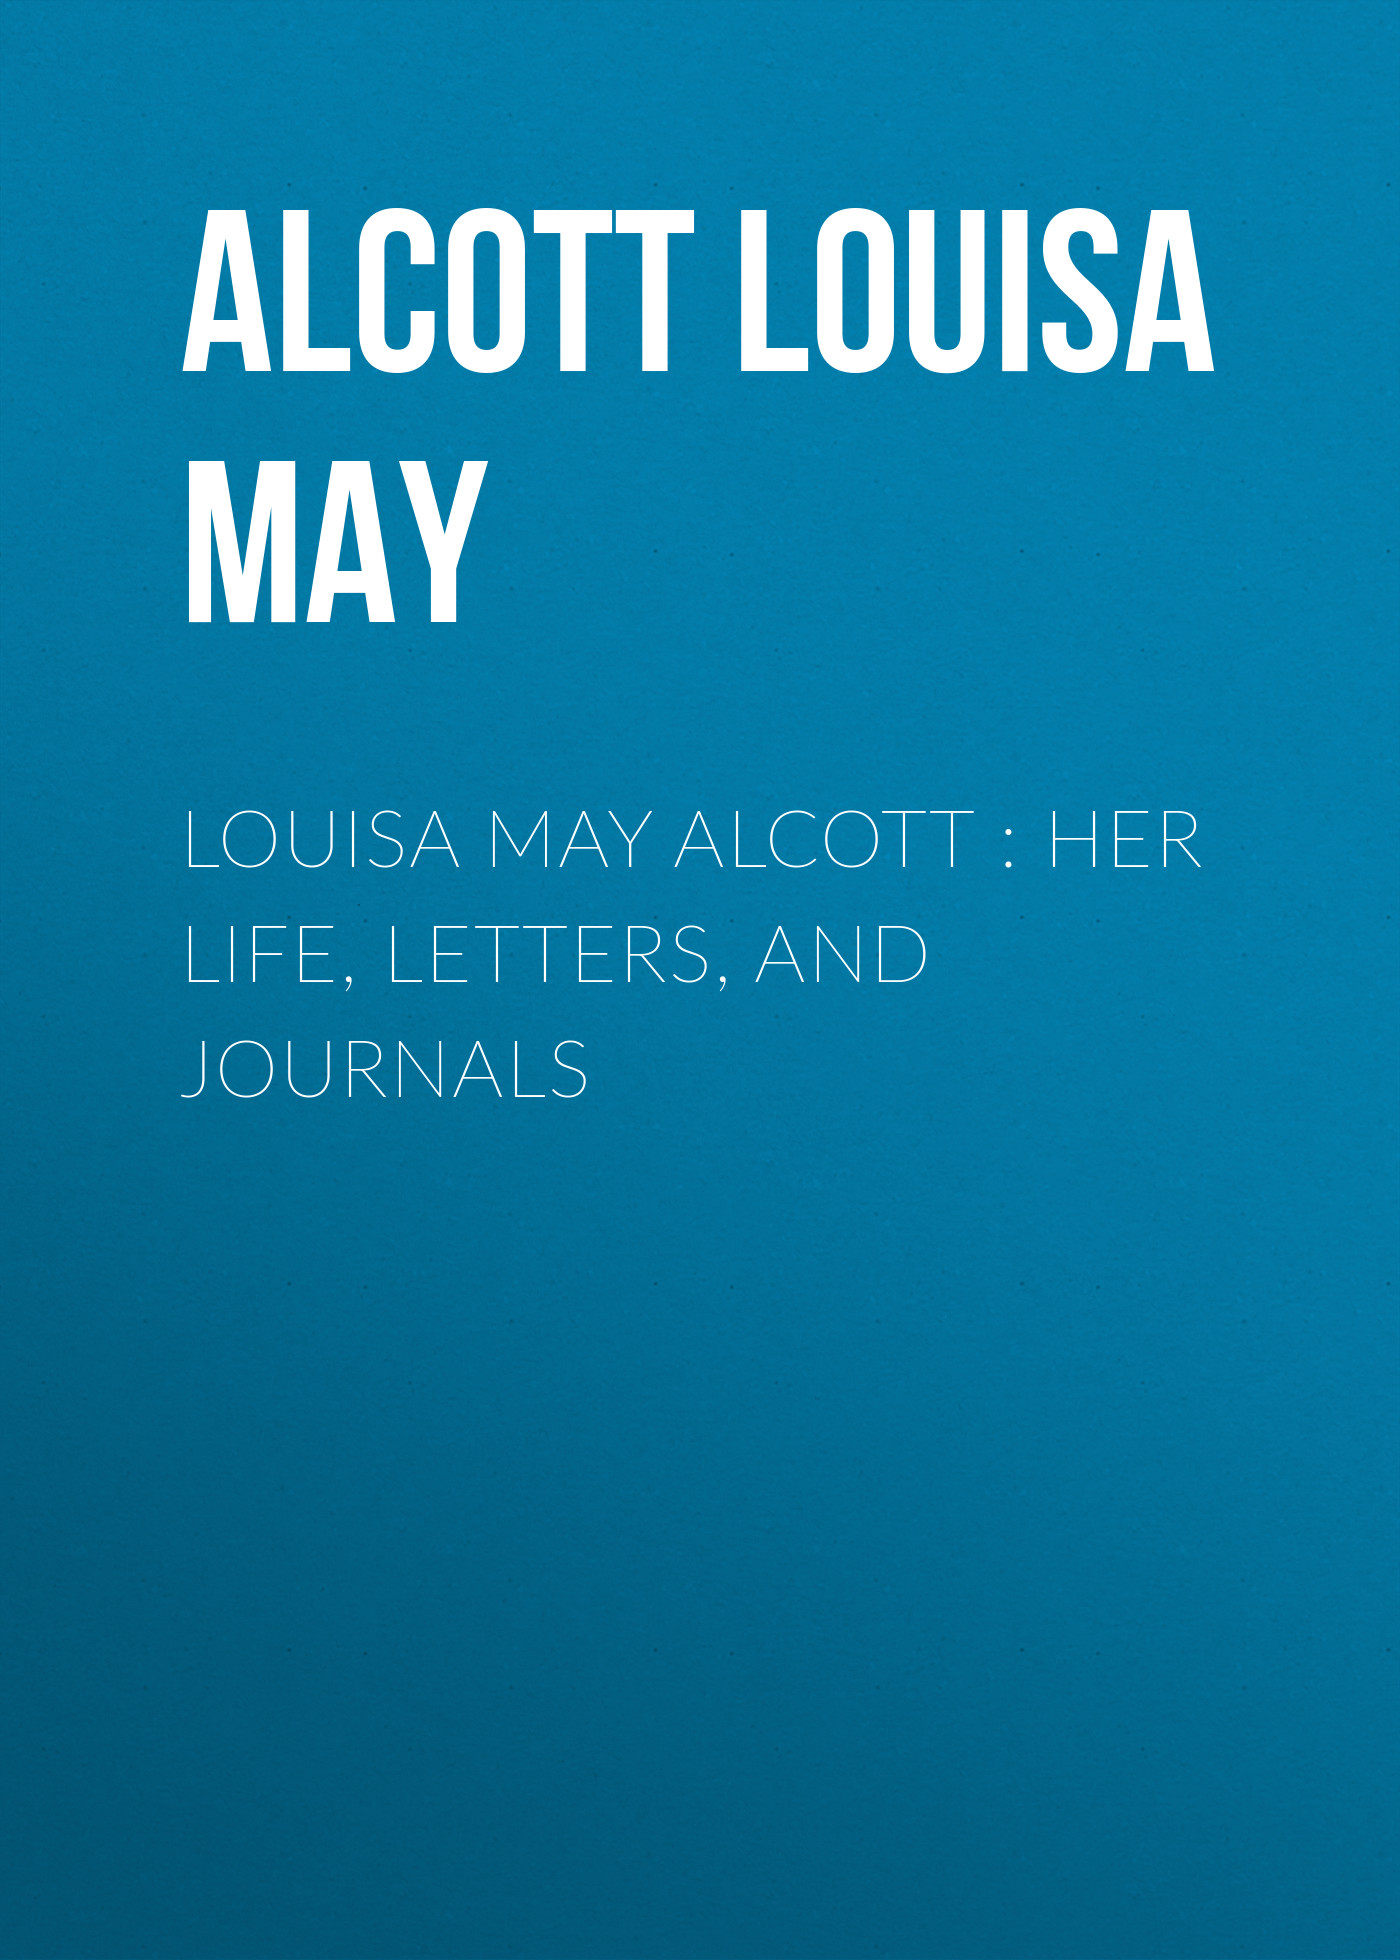 Книга Louisa May Alcott : Her Life, Letters, and Journals из серии , созданная Louisa Alcott, может относится к жанру Иностранные языки, Зарубежная классика. Стоимость электронной книги Louisa May Alcott : Her Life, Letters, and Journals с идентификатором 23144299 составляет 0 руб.